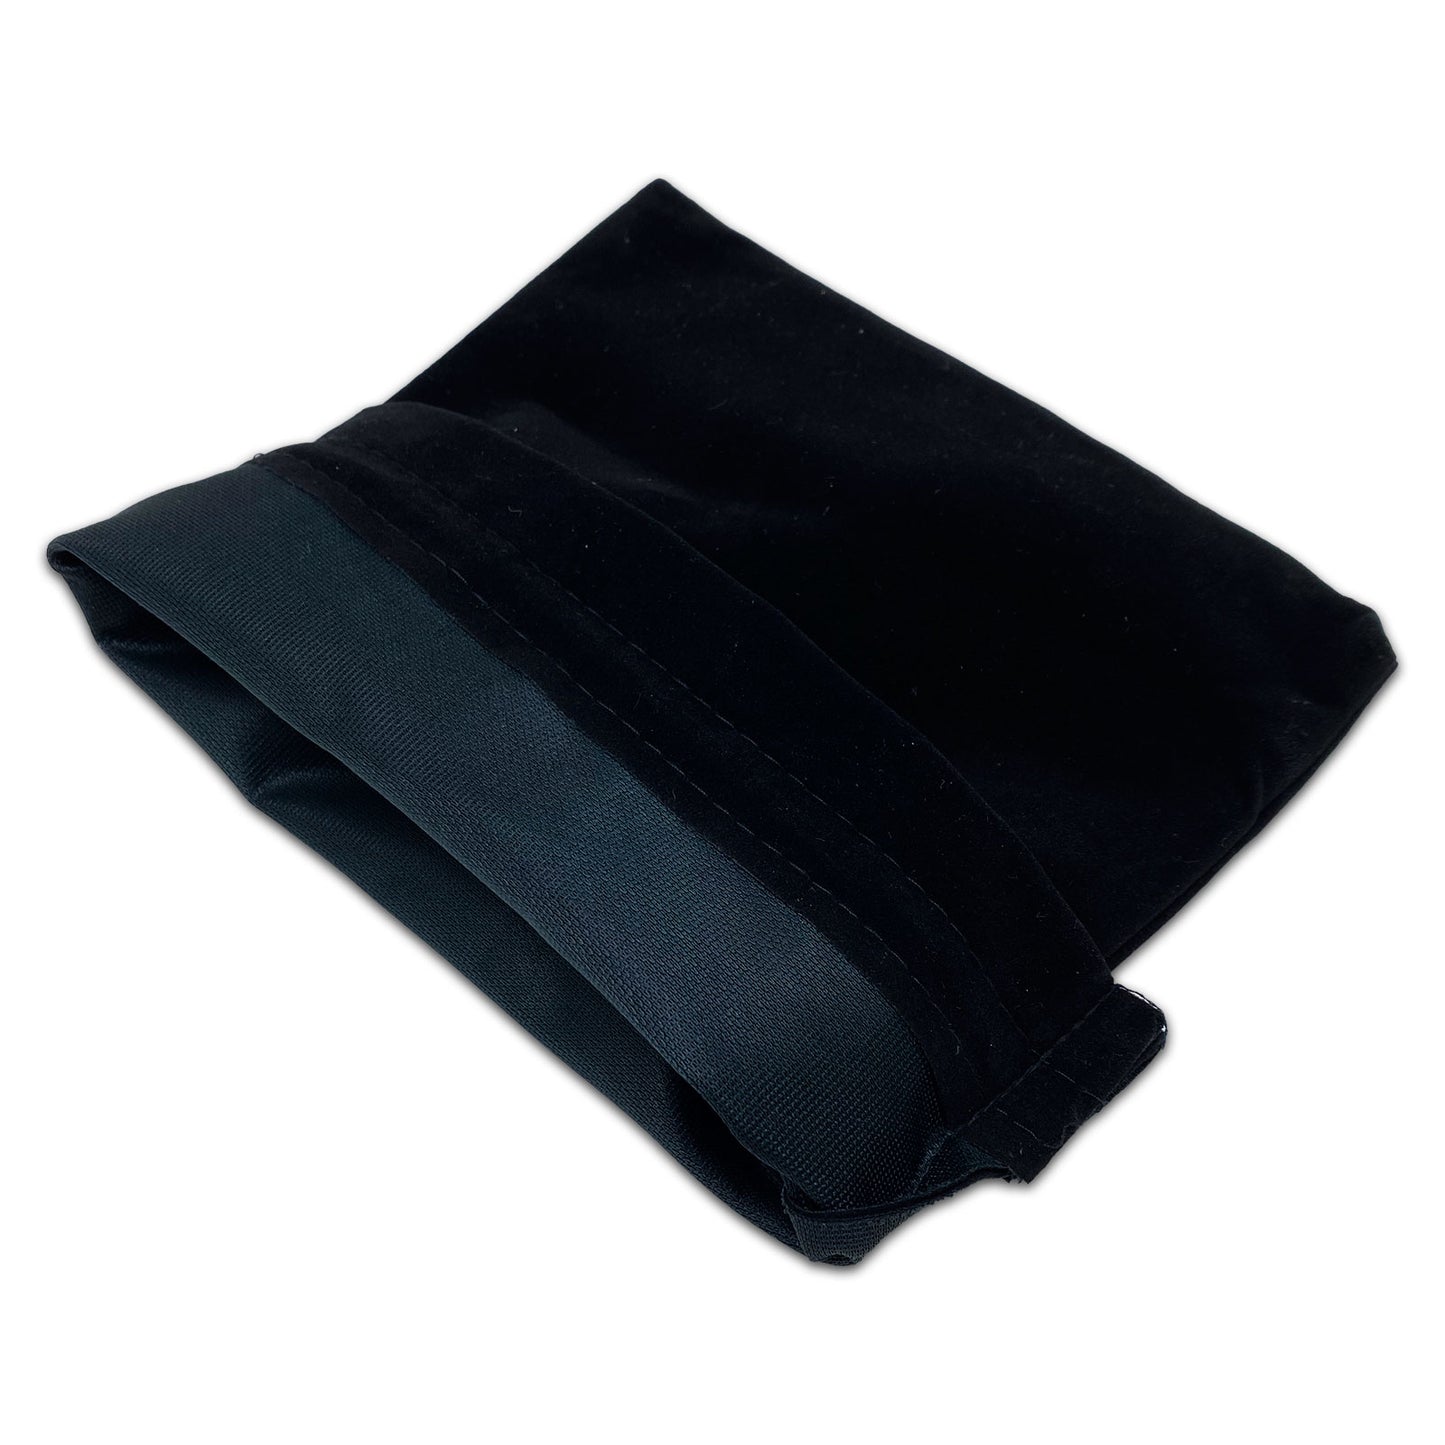 8" x 10" Black Velvet Drawstring Pouch